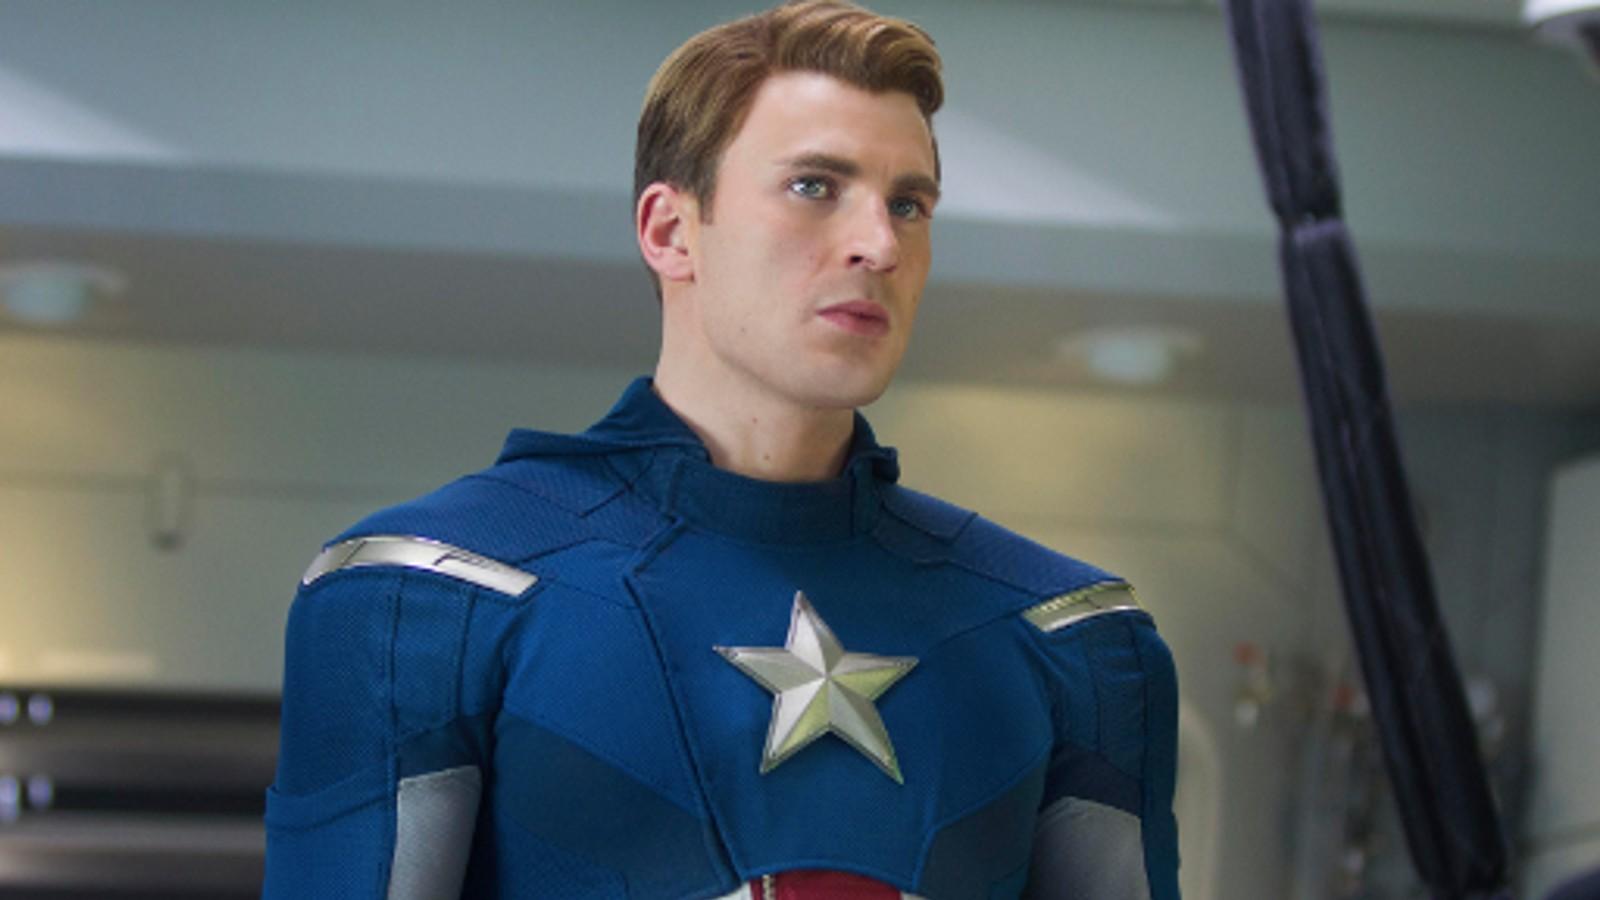 Chris Evans as Steve Rogers in The Avengers